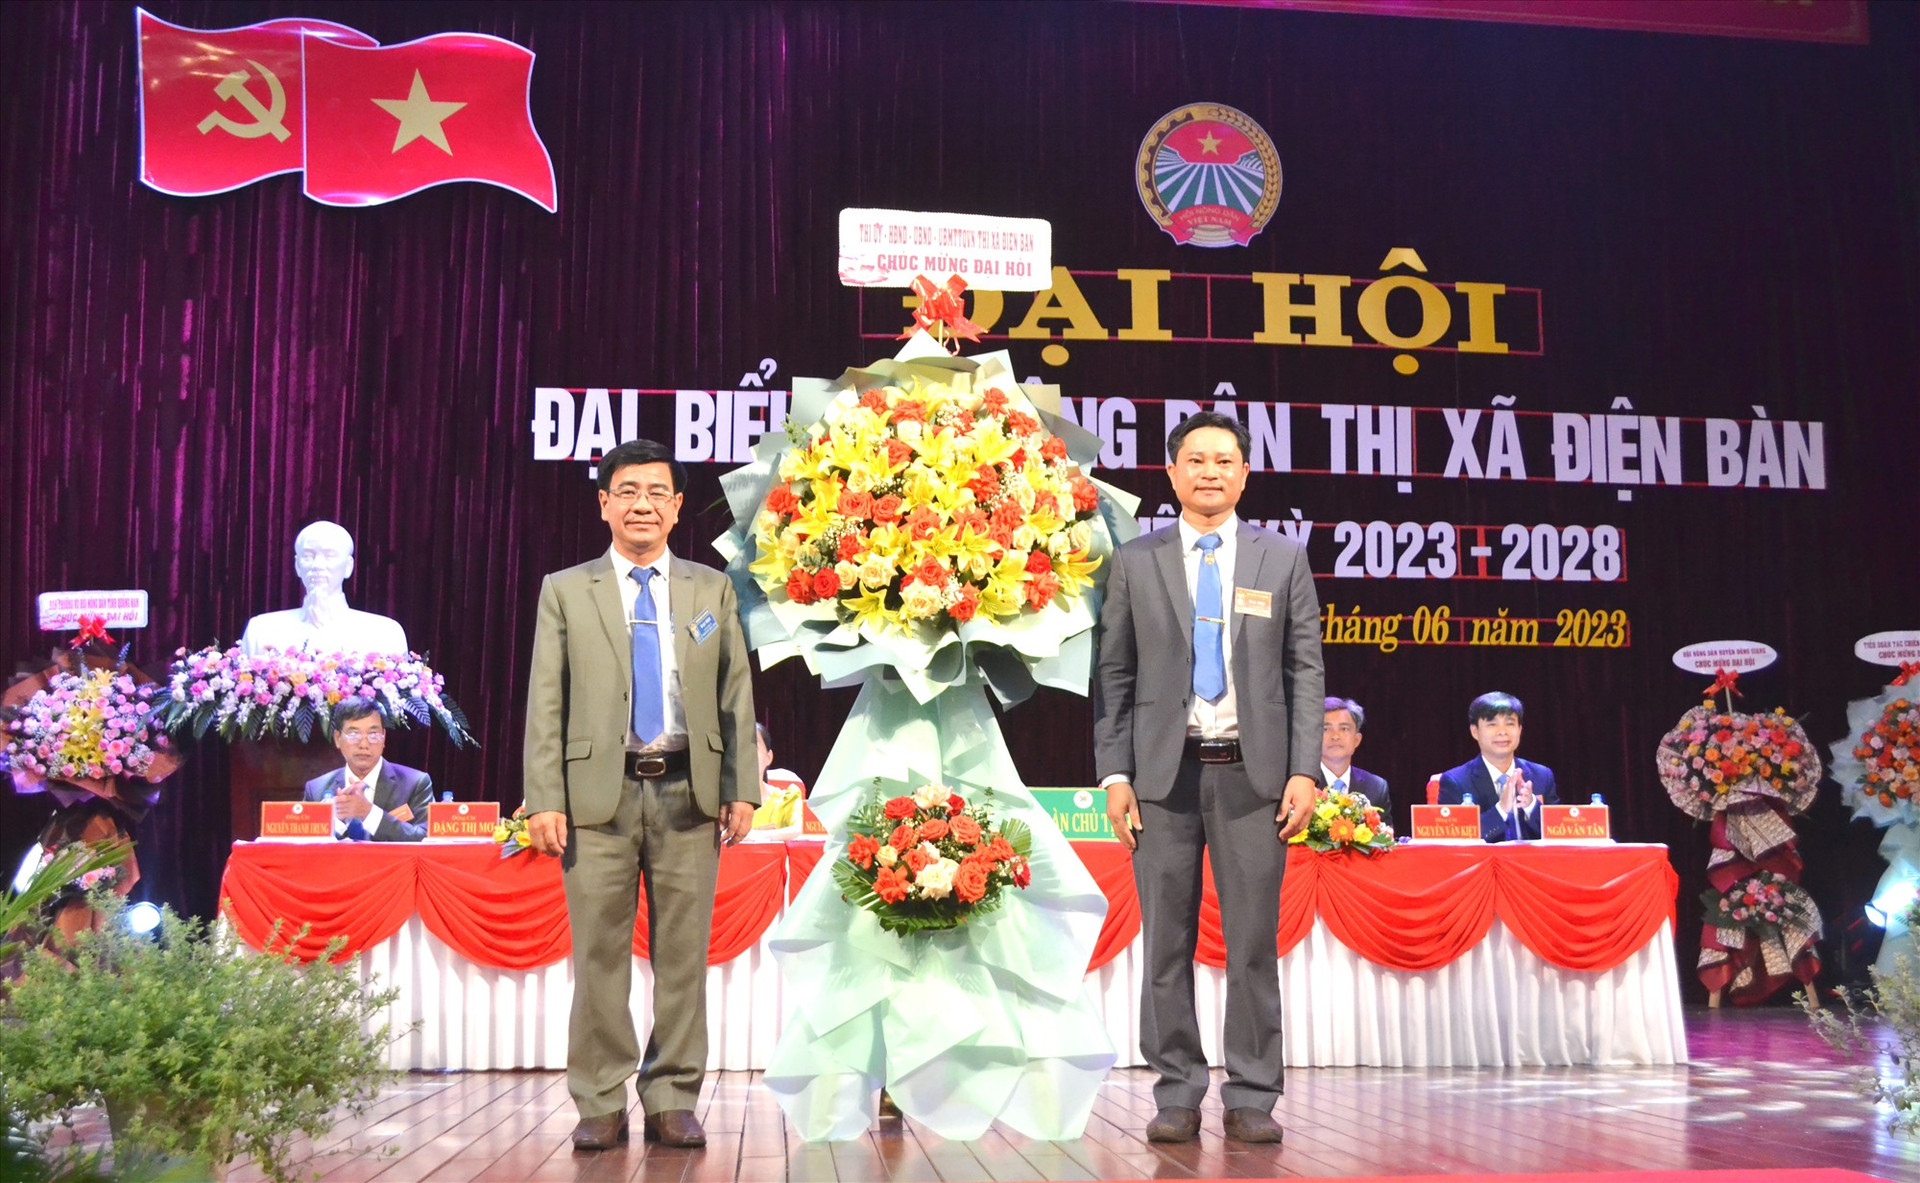 Bí thư Thị ủy Điện Bàn - ông Phan Minh Dũng tặng lẵng hoa chúc mừng đại hội. Ảnh: CT